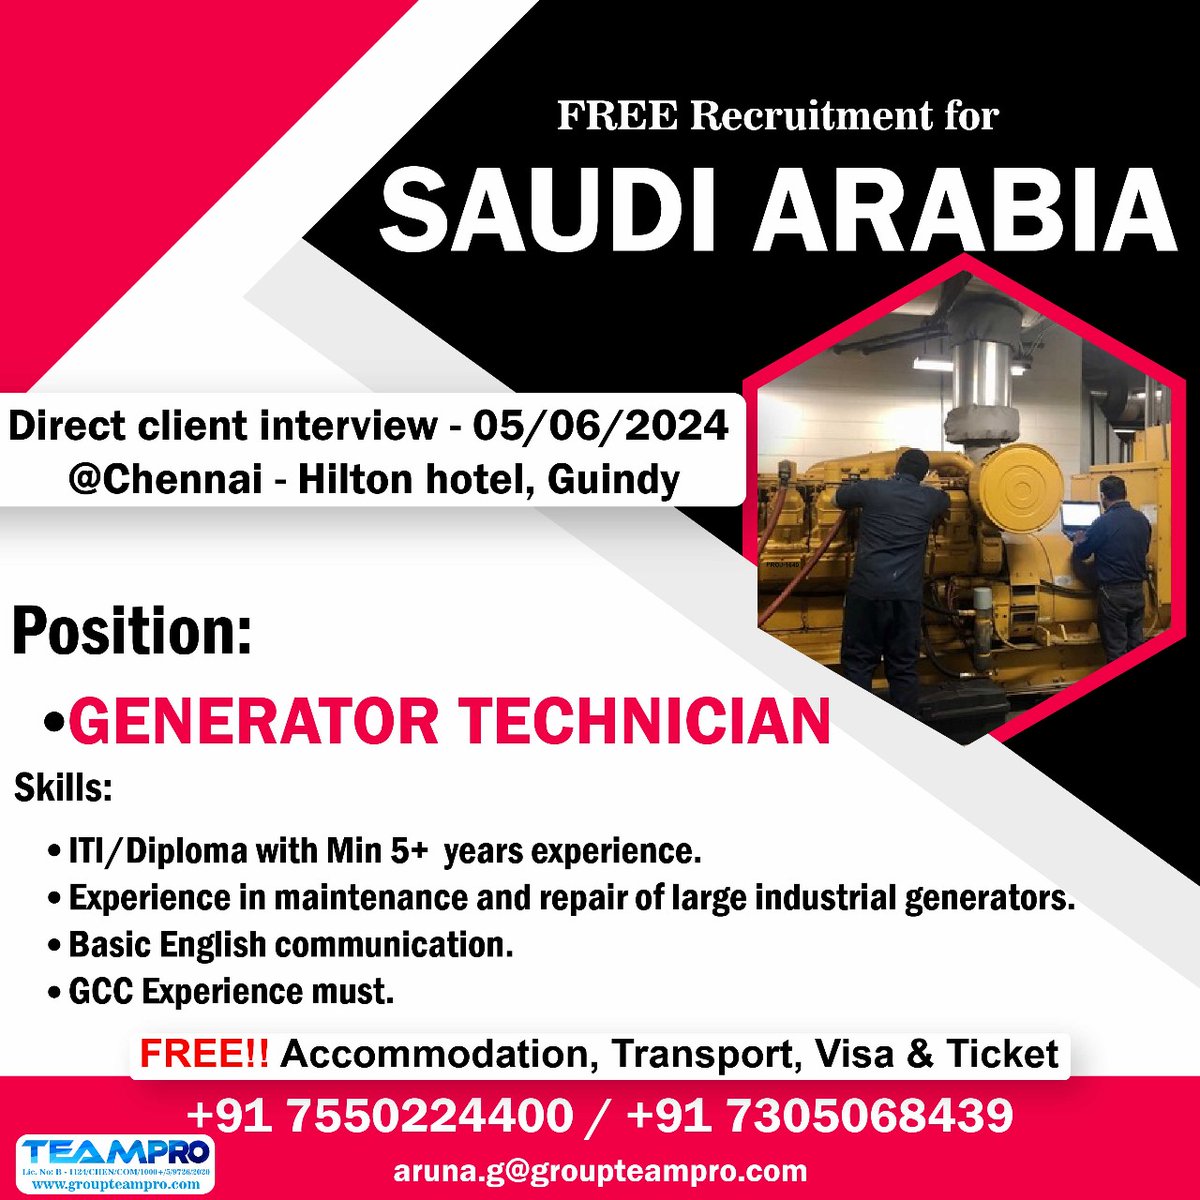 #freerecruitment #saudijobs #saudijobseekers #generatortechnician #facilitymaintenance #largeindustrialgenerators #immediatejoiners #directinterview #shortlsitingunderprogress